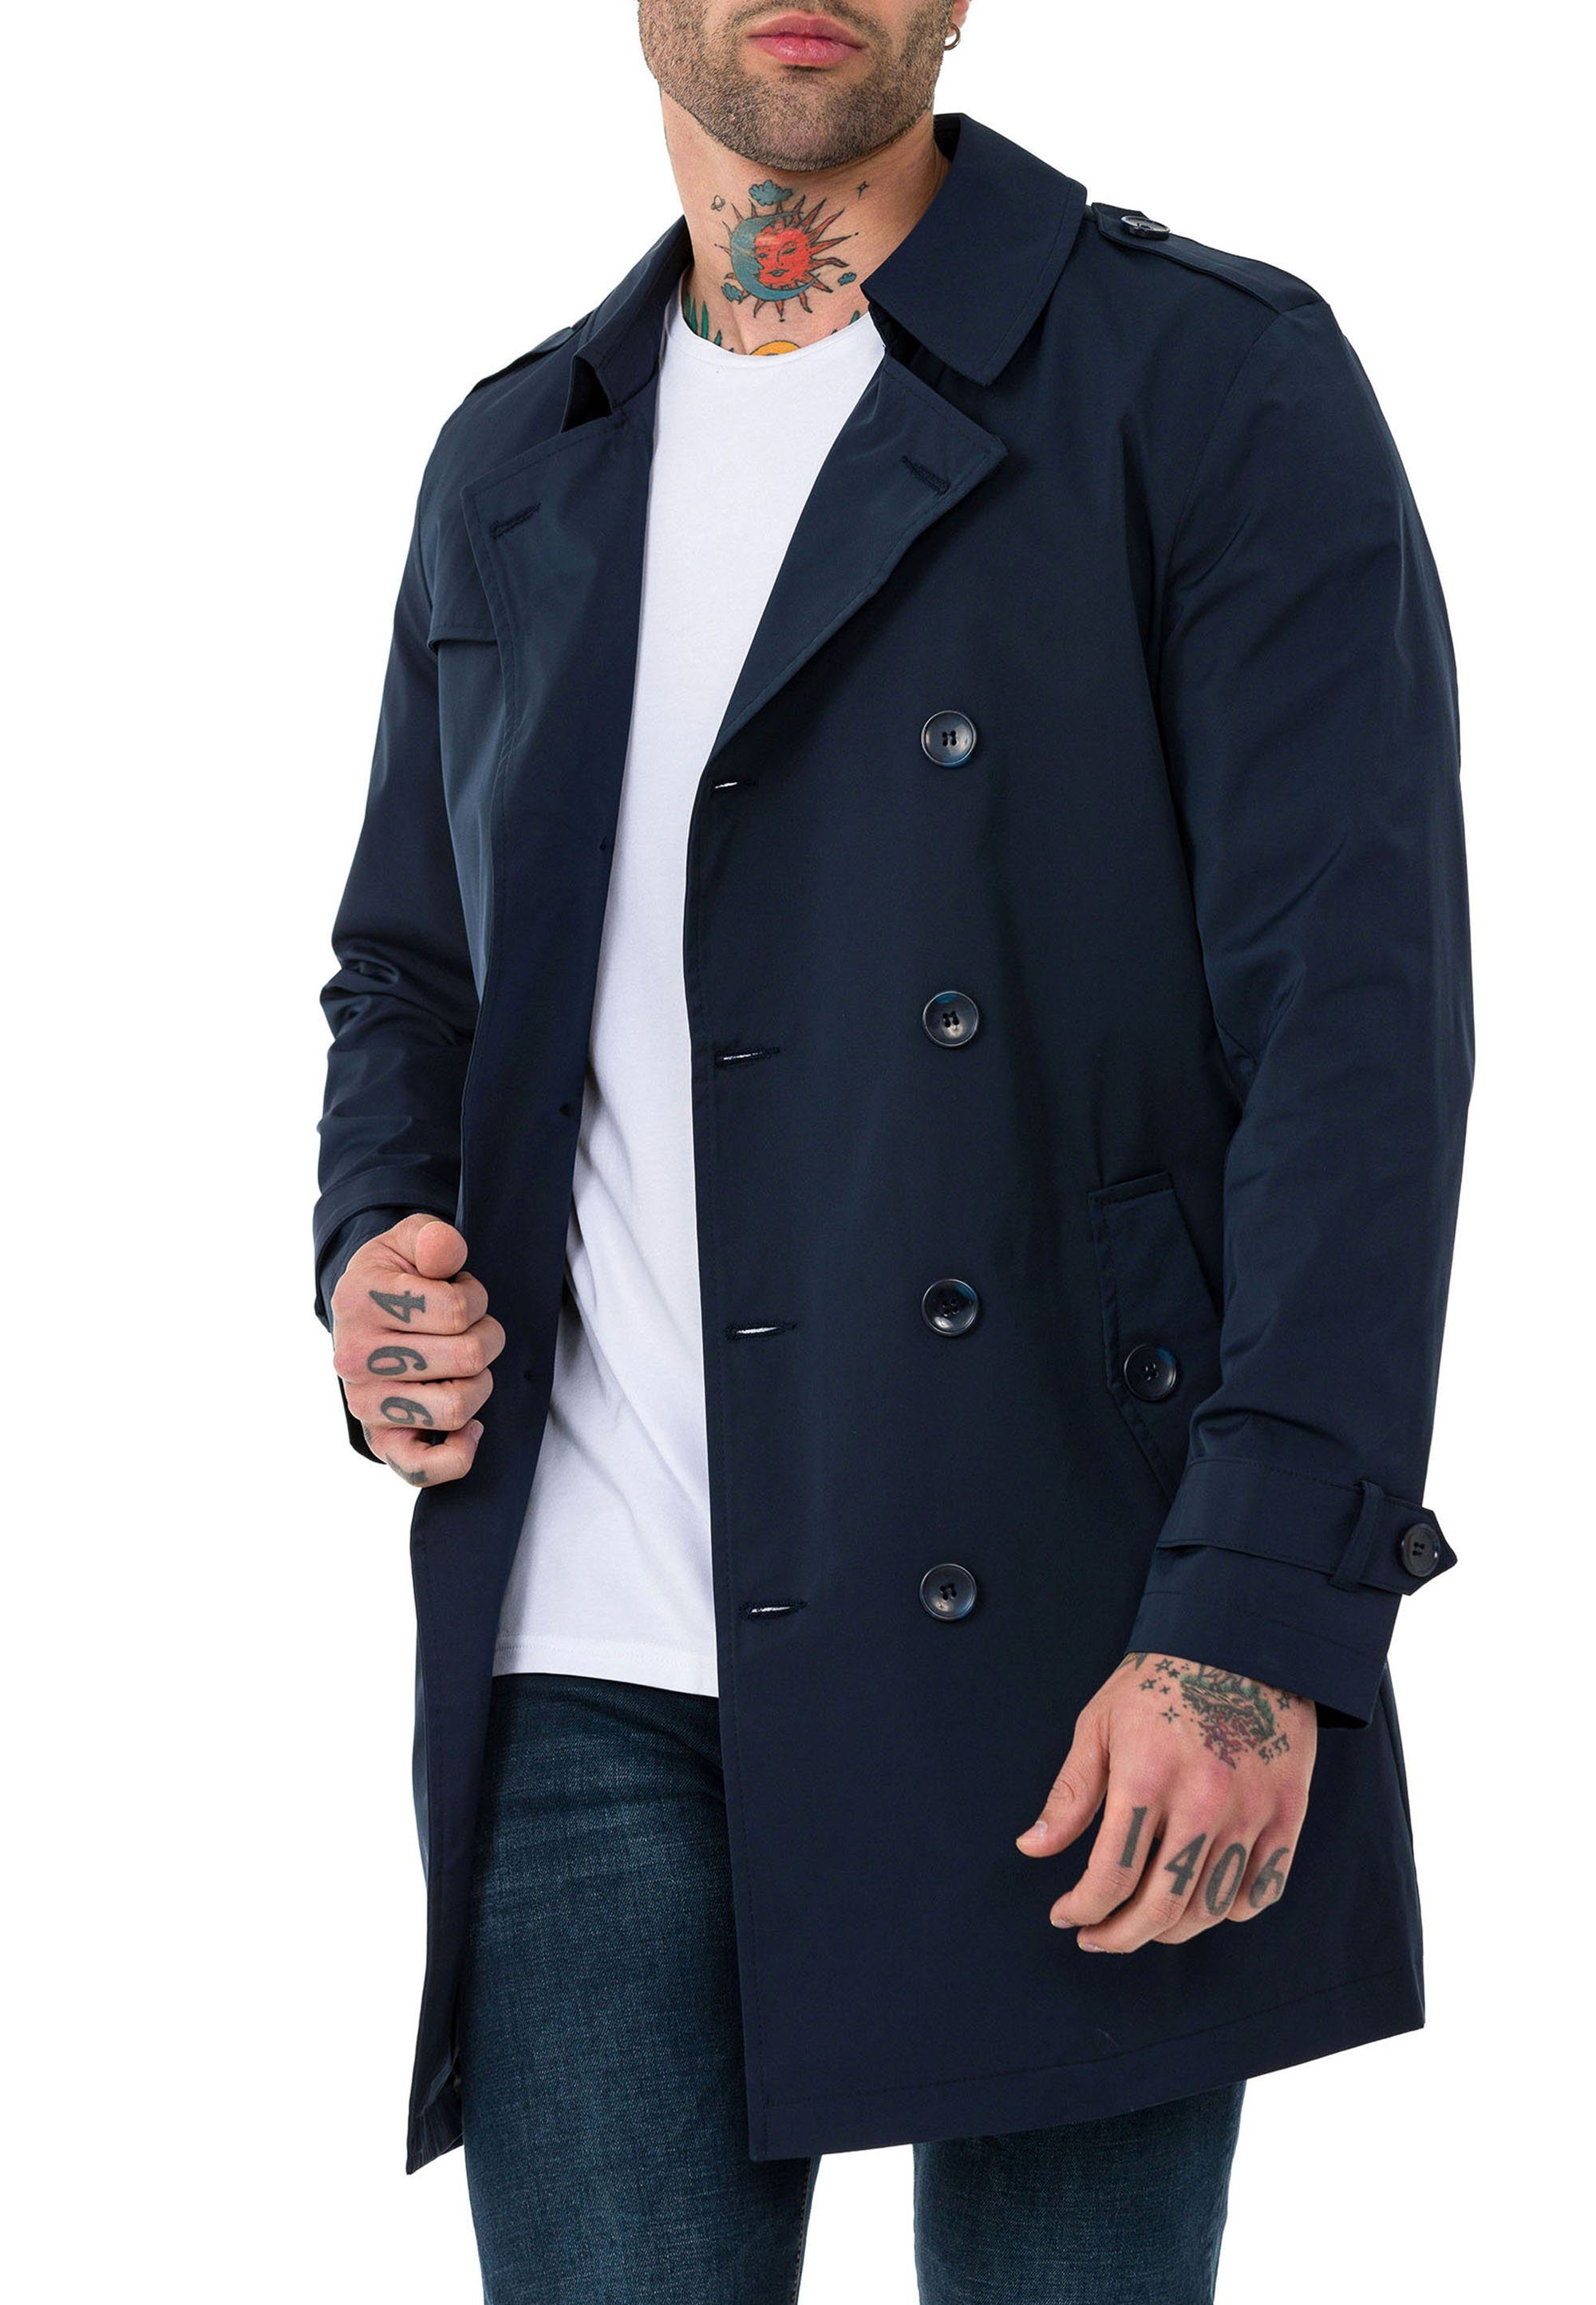 Mantel Gürtelschnalle Qualität mit RedBridge Blau Navy Premium Trenchcoat